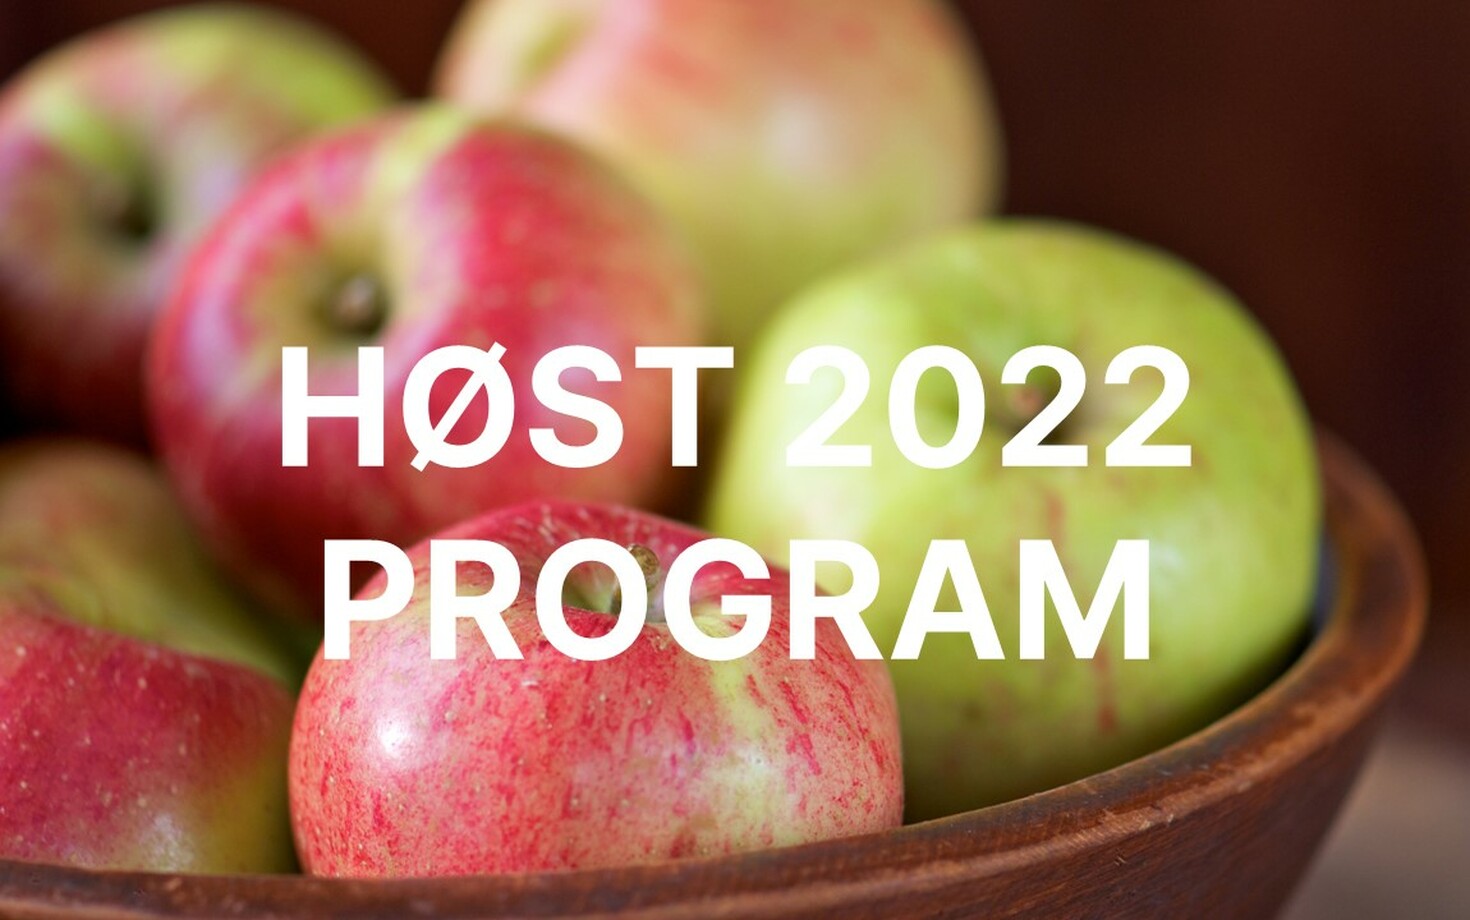 Program Høst 2022